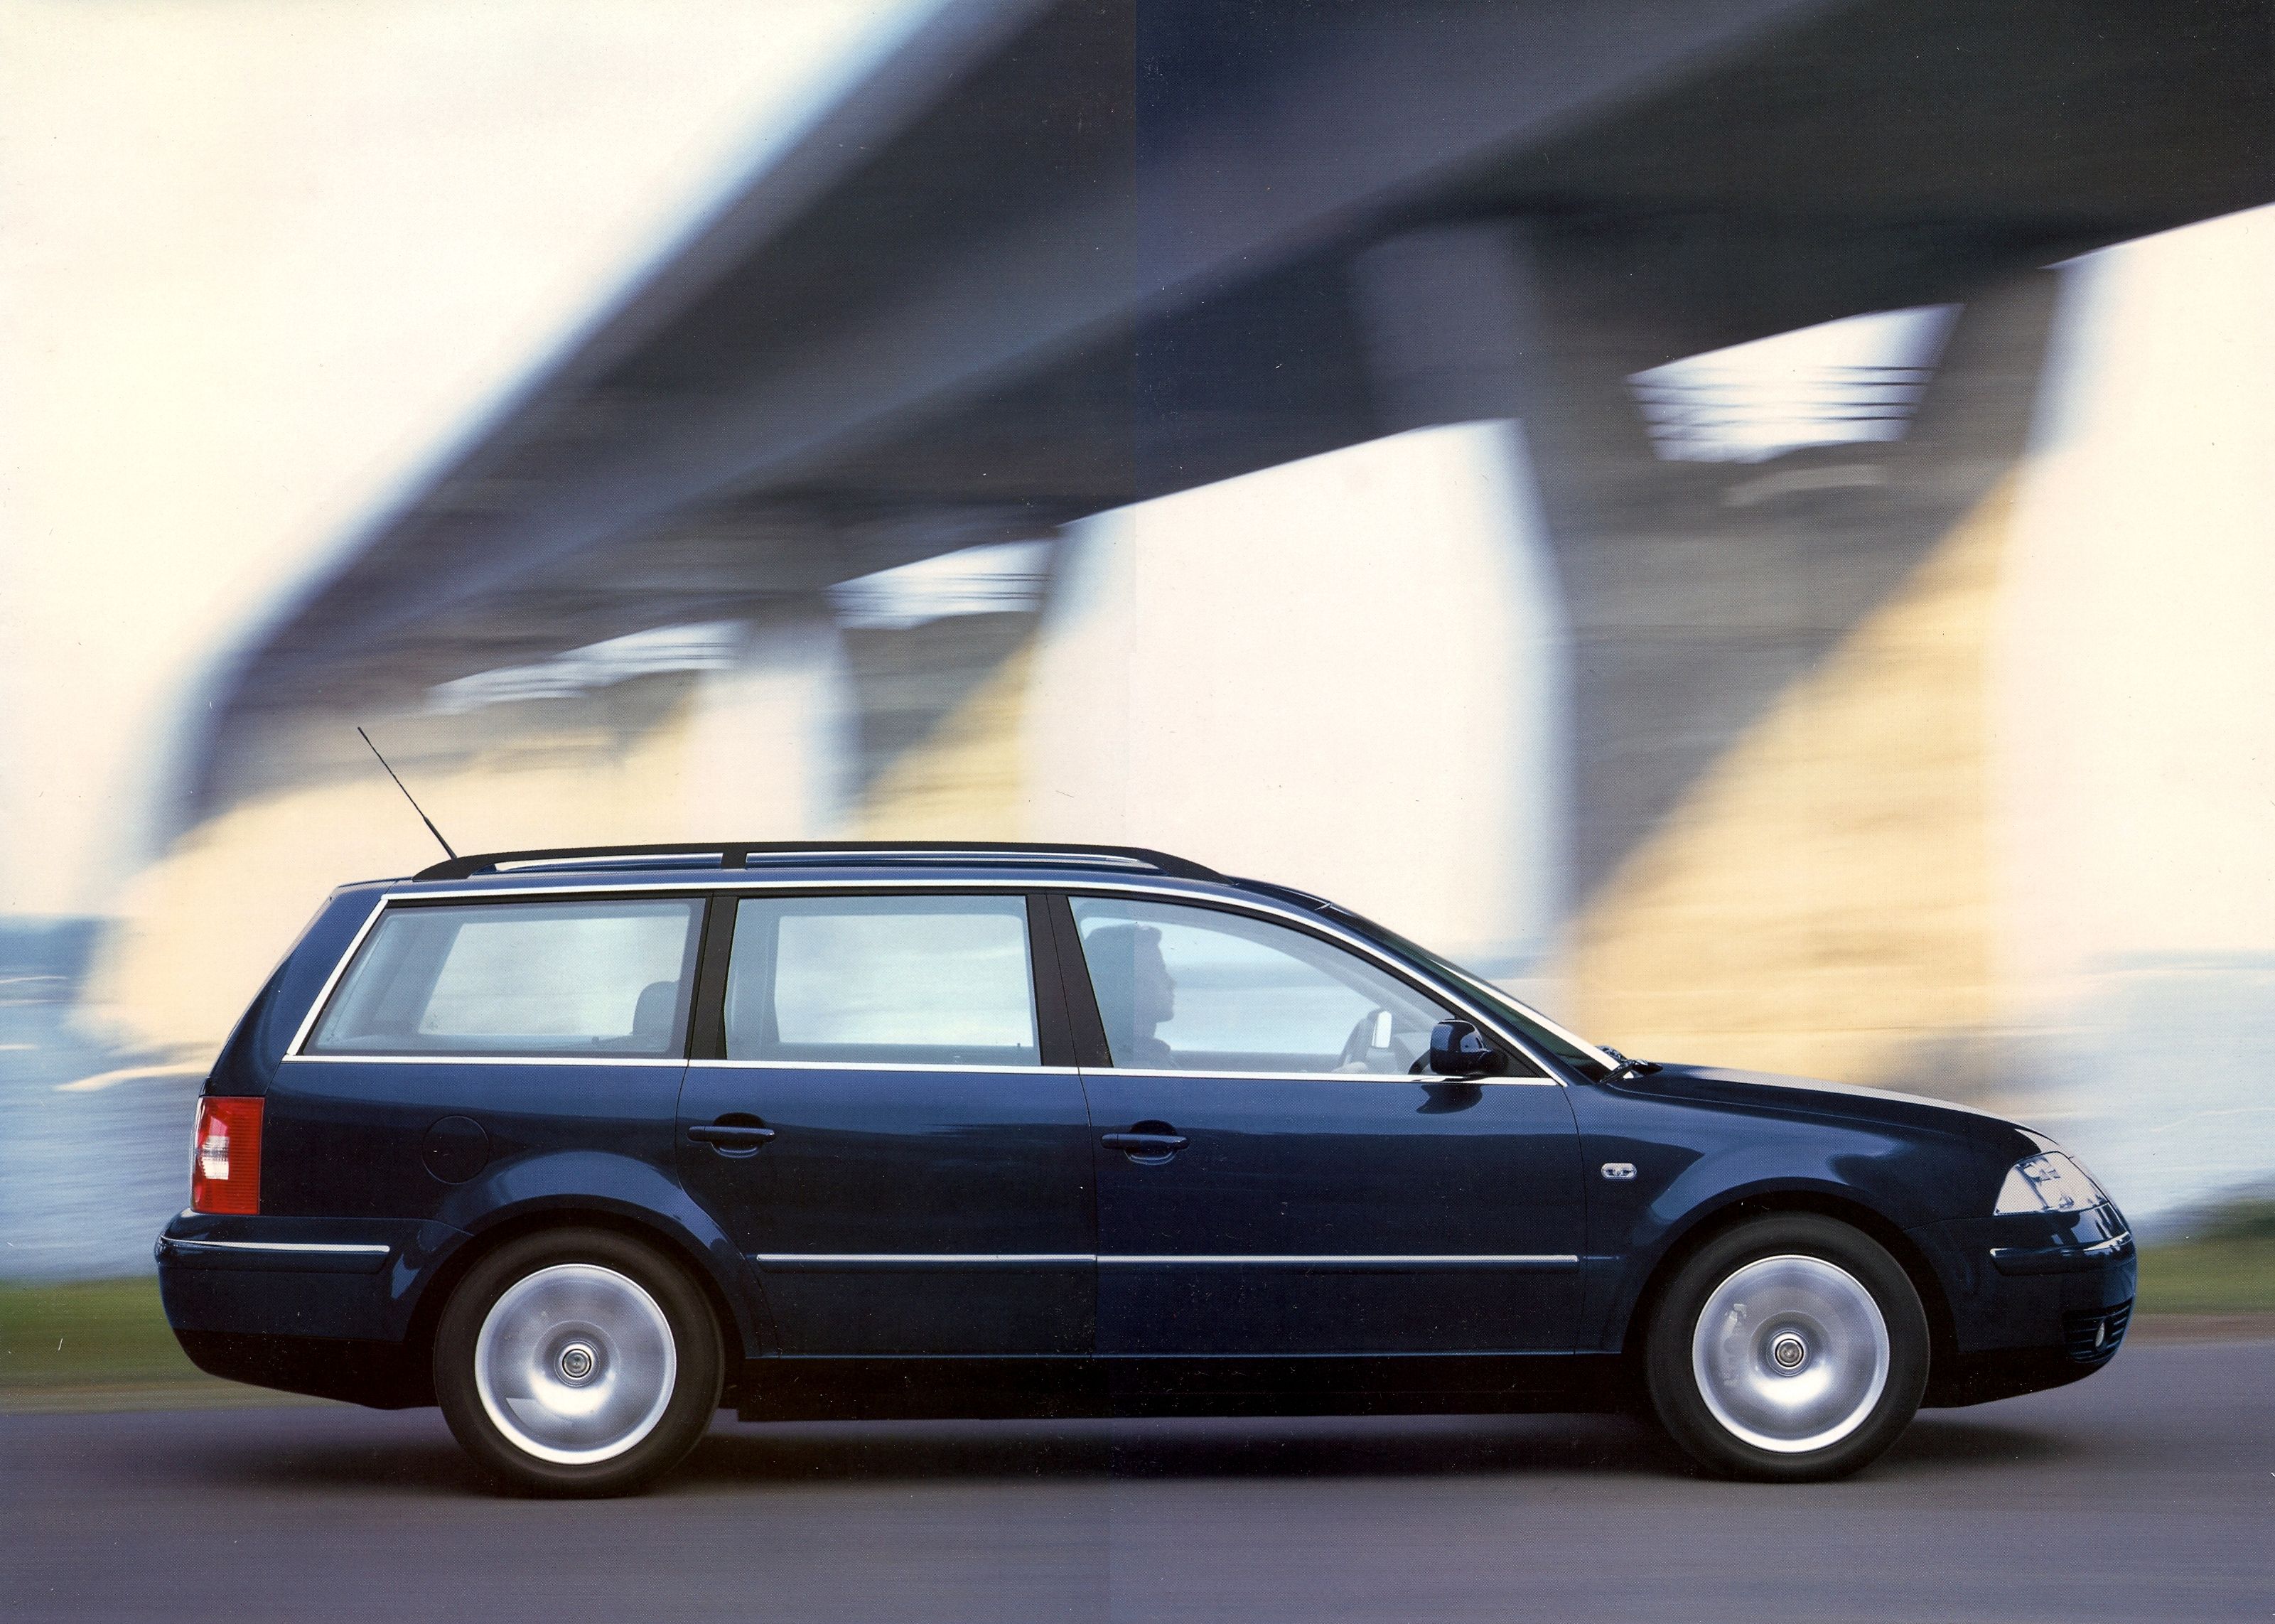 Пассат б5 универсал 1.9 дизель. Volkswagen Passat универсал 2000. Volkswagen Passat b5 2005 универсал. VW Passat b5 Wagon. Фольксваген Пассат универсал 2005.